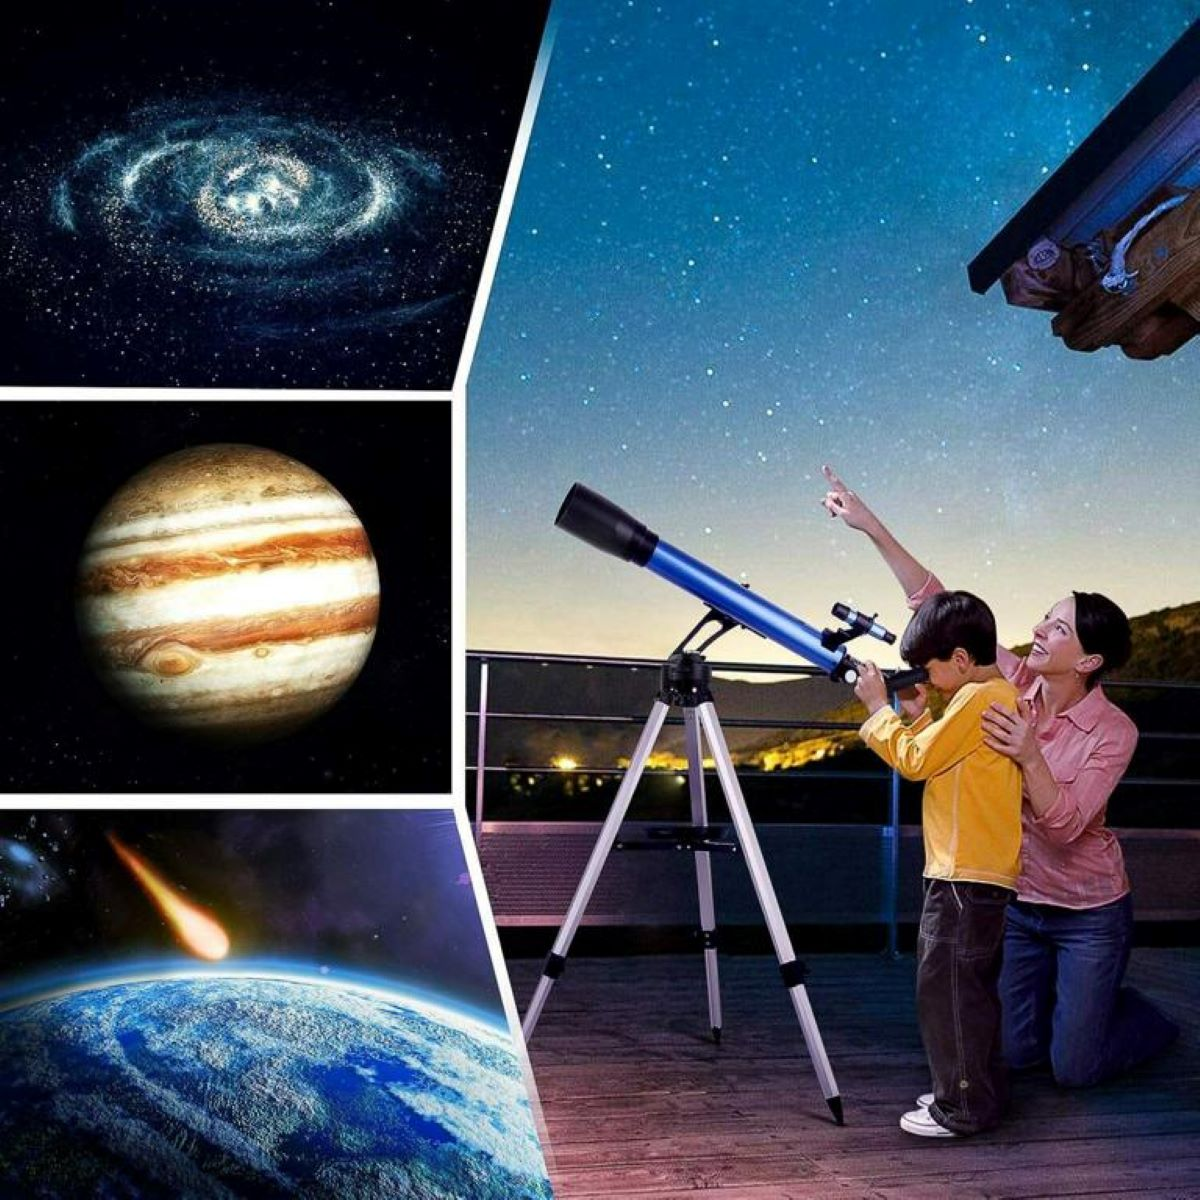 60 Teleskop Binocular mm, 28x, 117x, TELMU